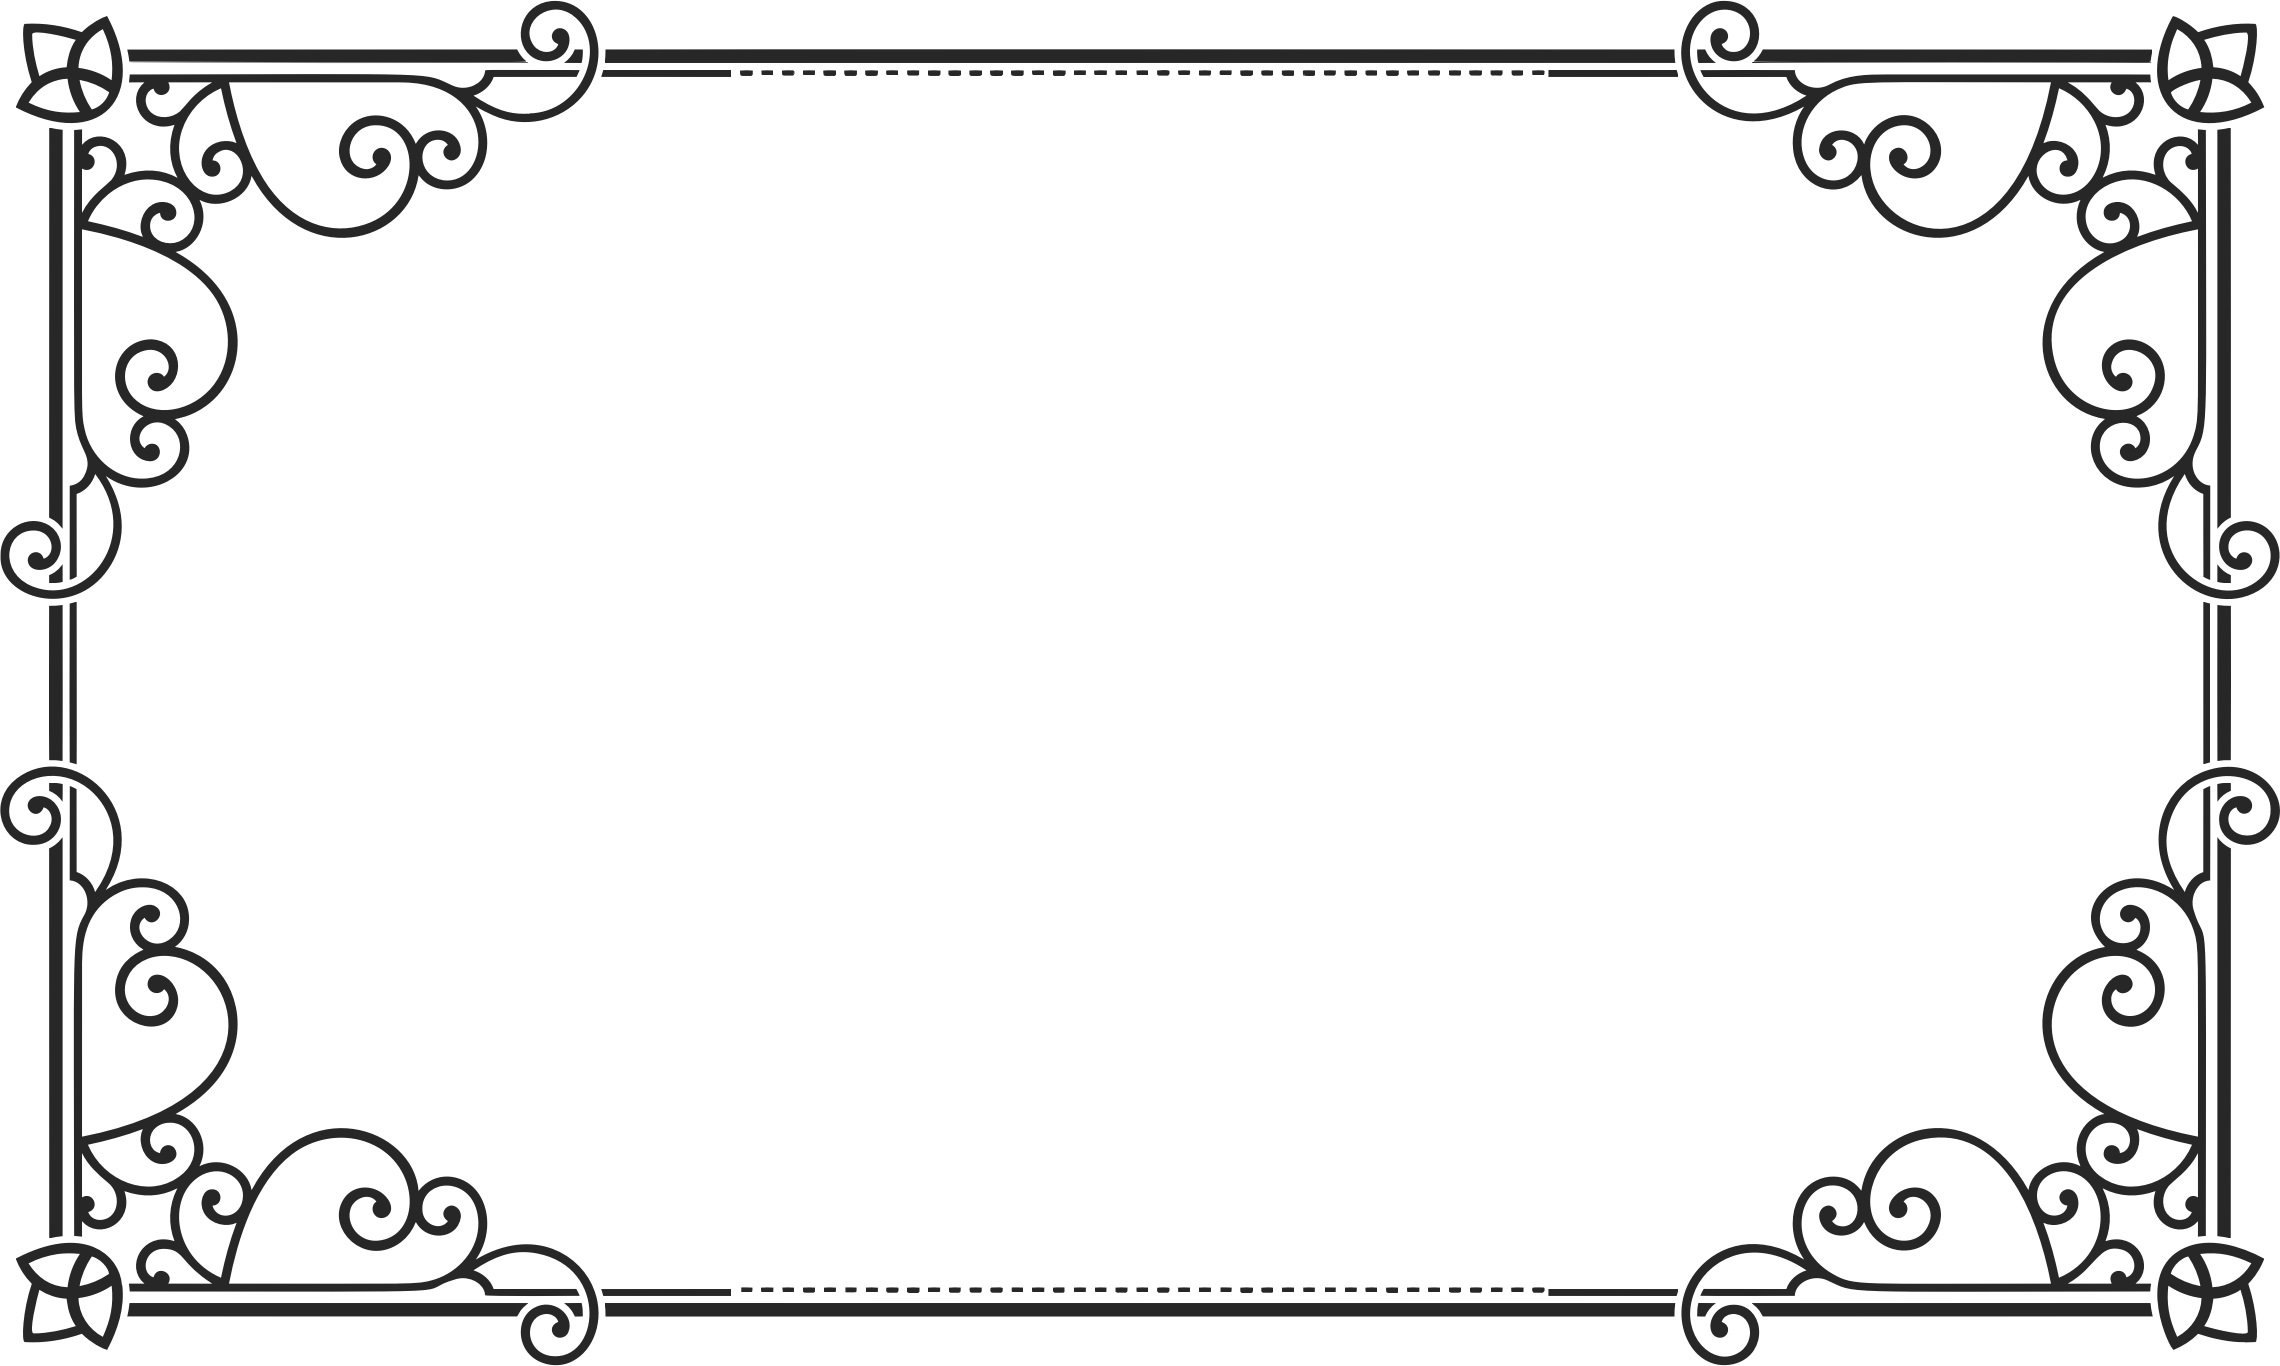 Белая ажурная рамка на прозрачном фоне